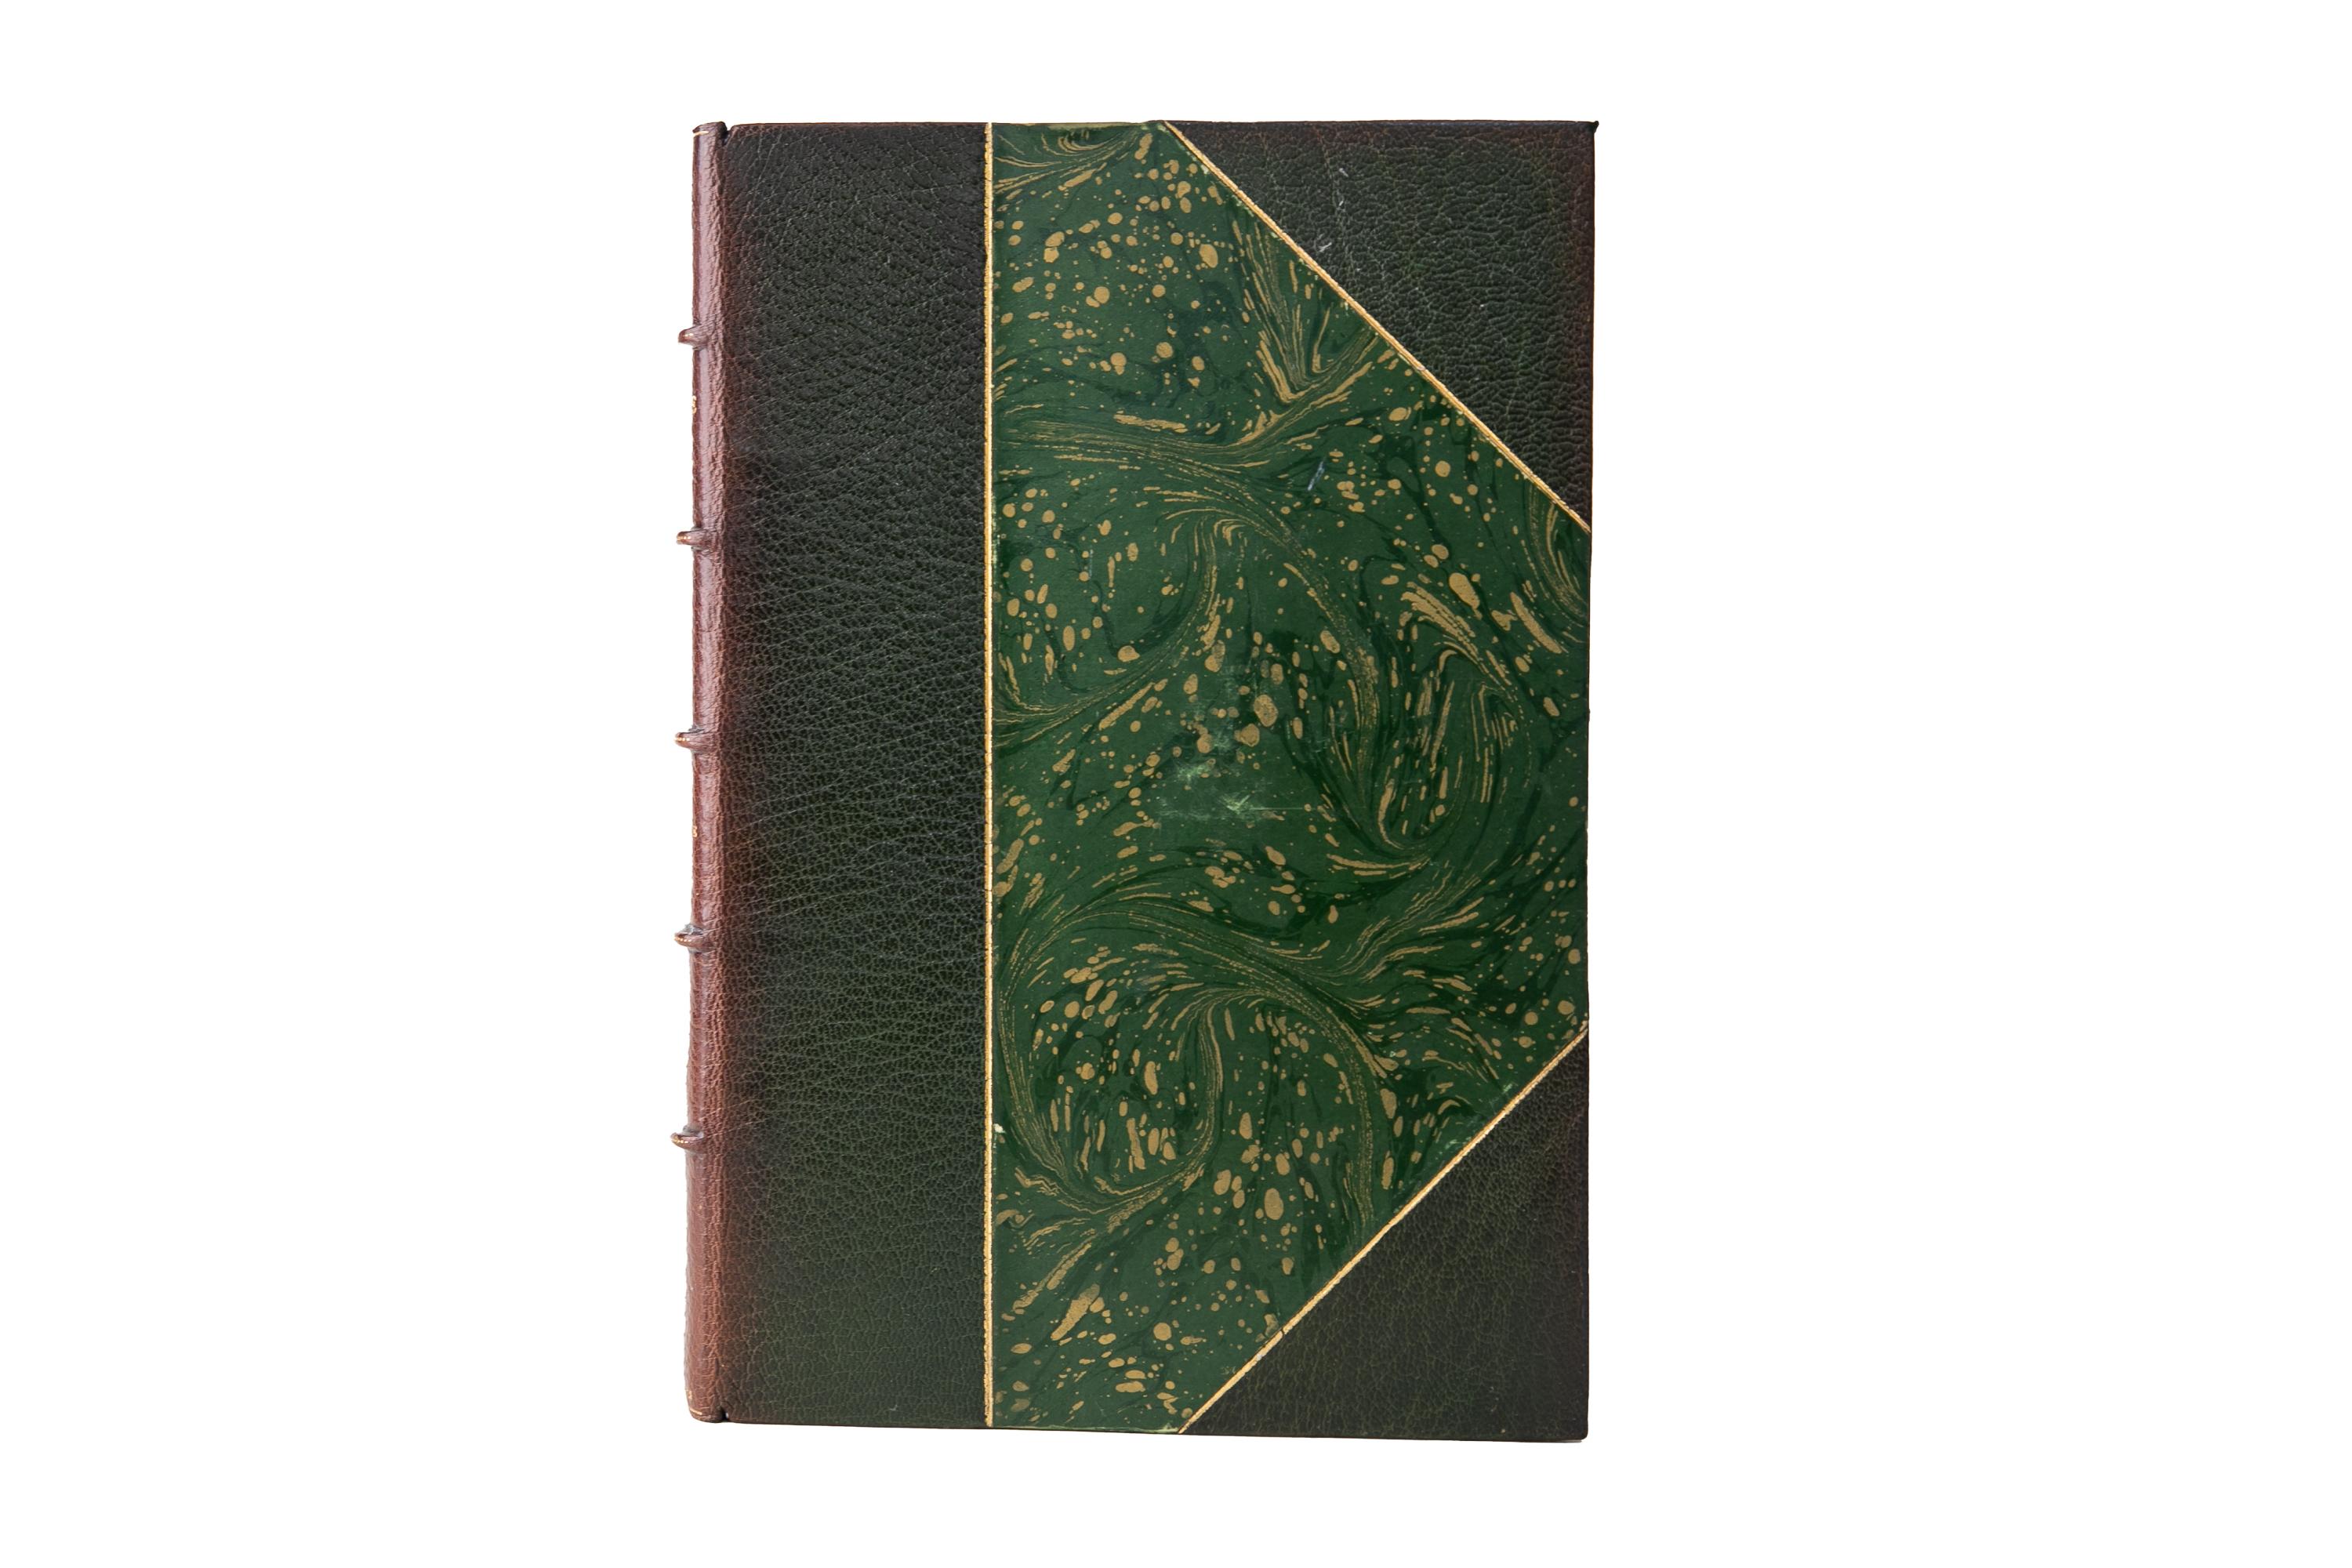 47 Bände. Alexandre Dumas, Das gesamte Werk. Edition de Médicis. Bound in 3/4 grün Marokko und marmoriert Gerichte mit den erhöhten Bandrücken in Gold-Tooling verziert und verblasst zu braun. Die oberen Kanten sind vergoldet und die Vorsätze